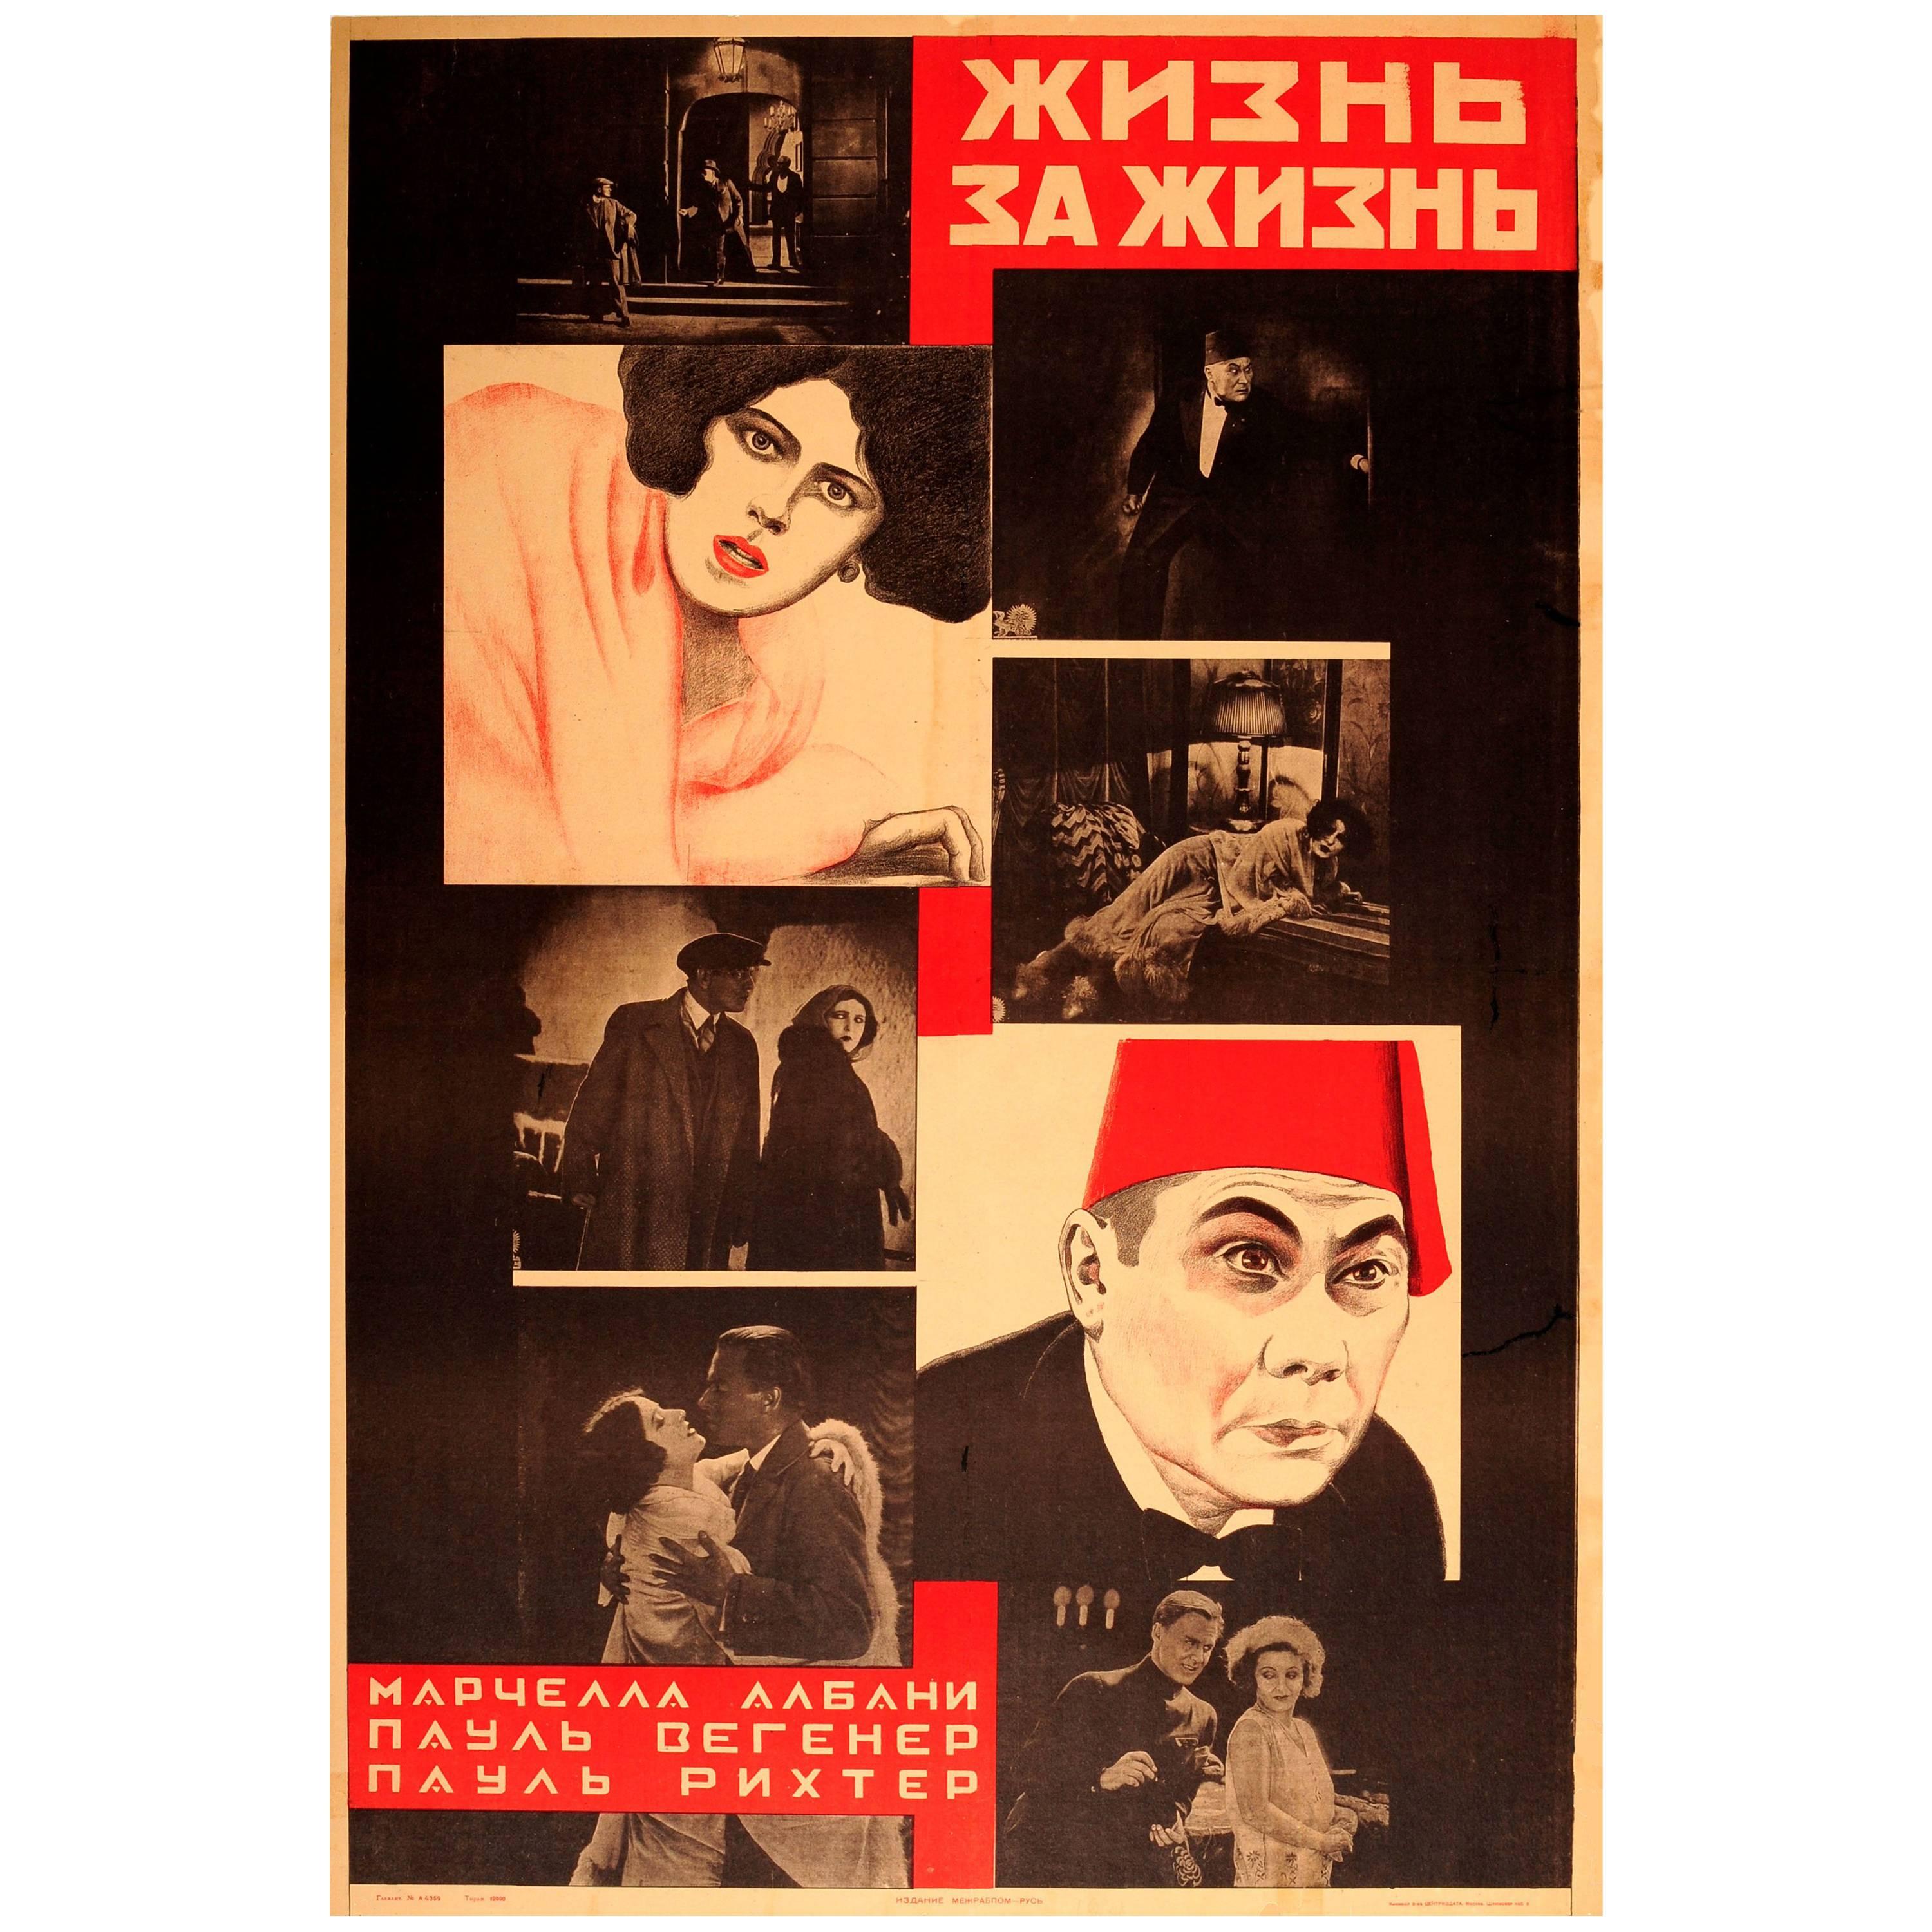 Affiche originale d'un film constructiviste soviétique pour un filmlent - Dagfin